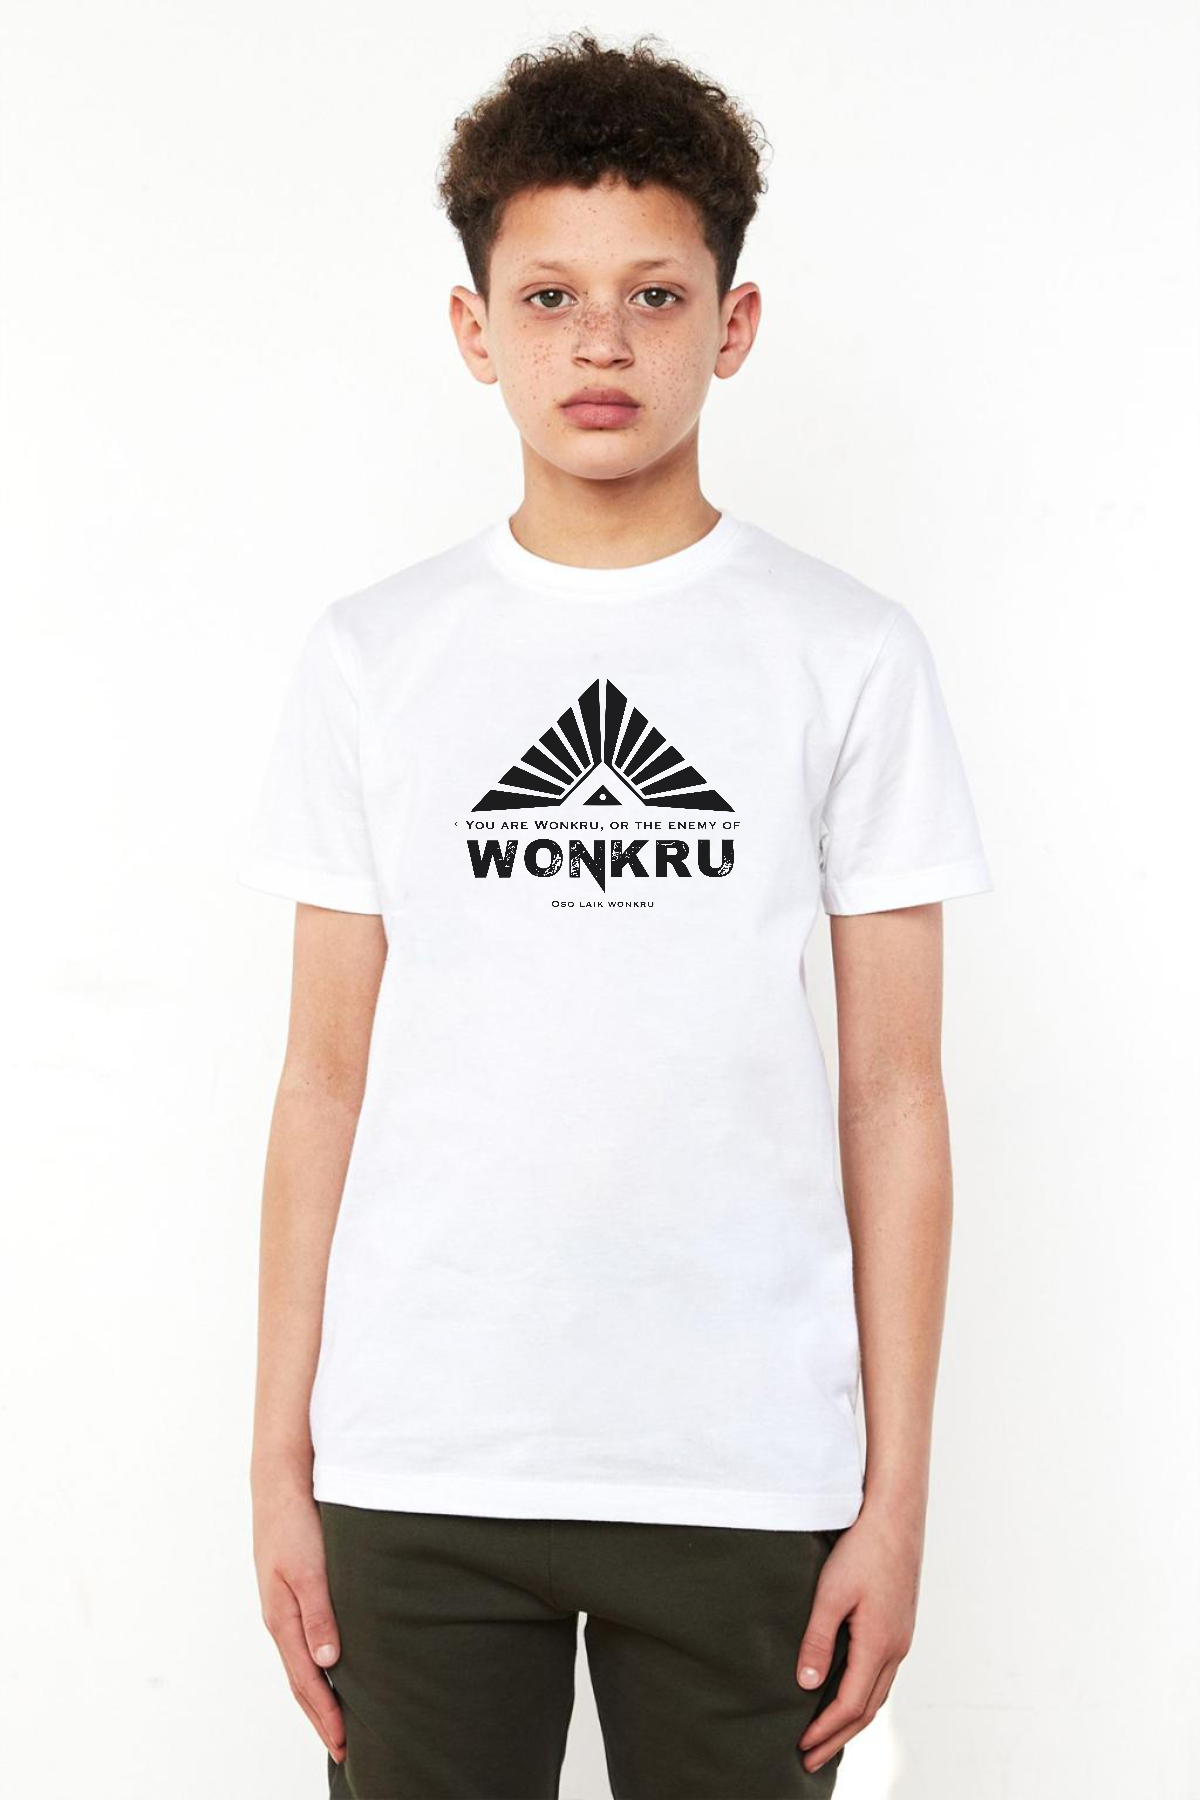 The100 Wonkru Sembol Beyaz Çocuk Bisikletyaka Tshirt